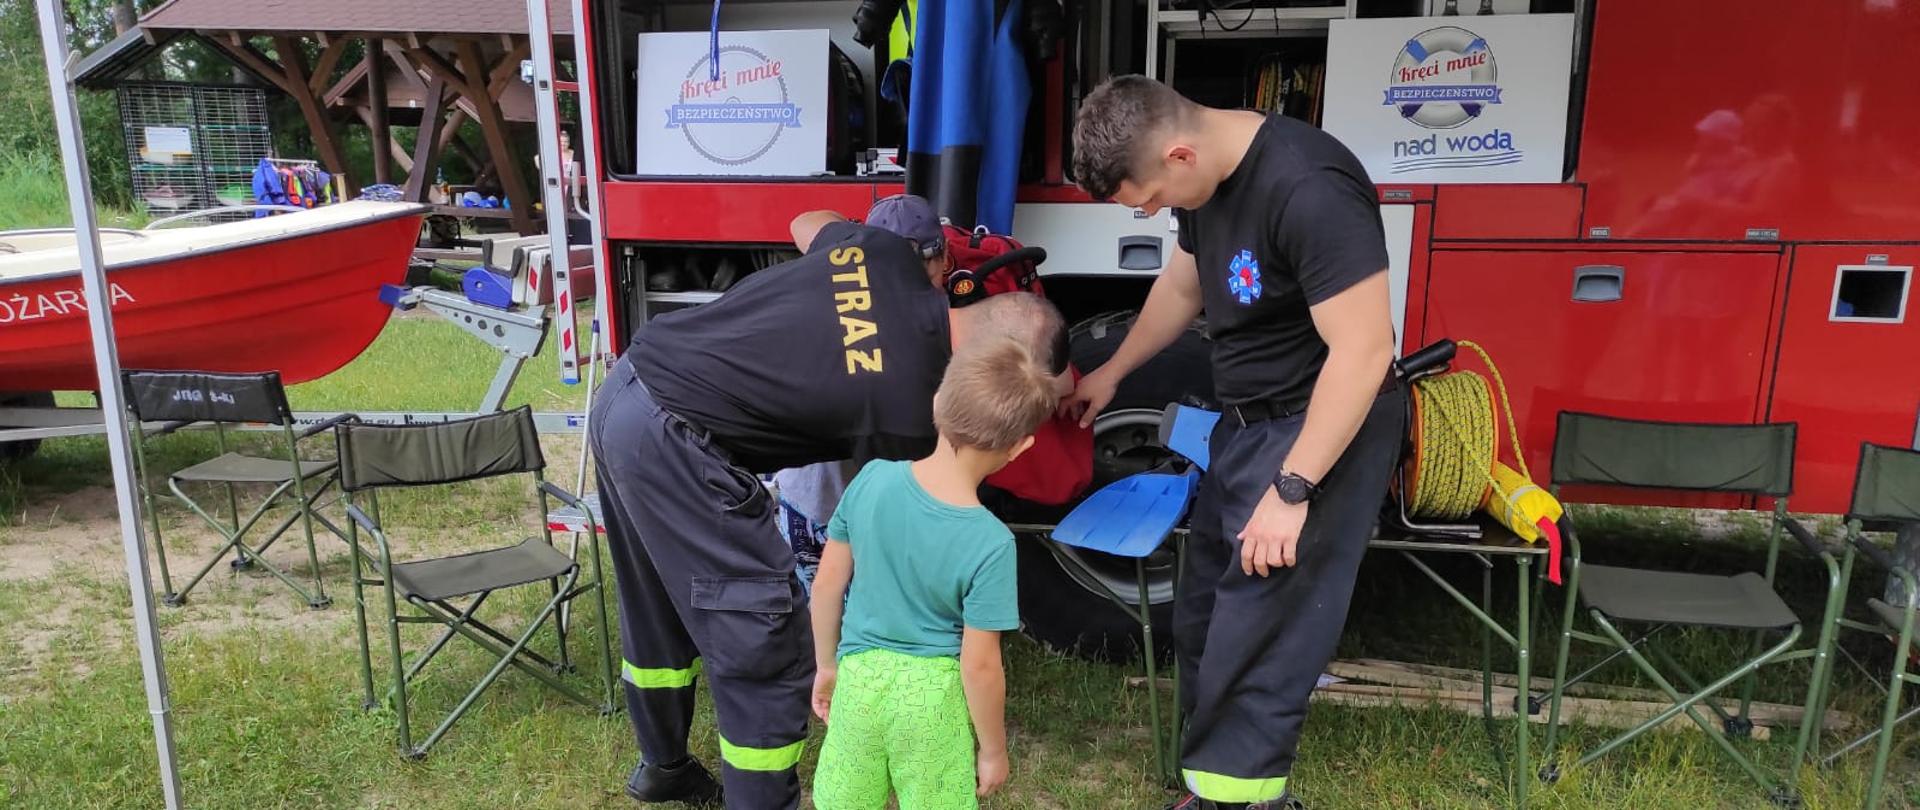 Zdjęcie obrazuje 2 strażaków i dziecko oglądających sprzęt strażacki w tle pojazd strażacki części łodzi i wiaty